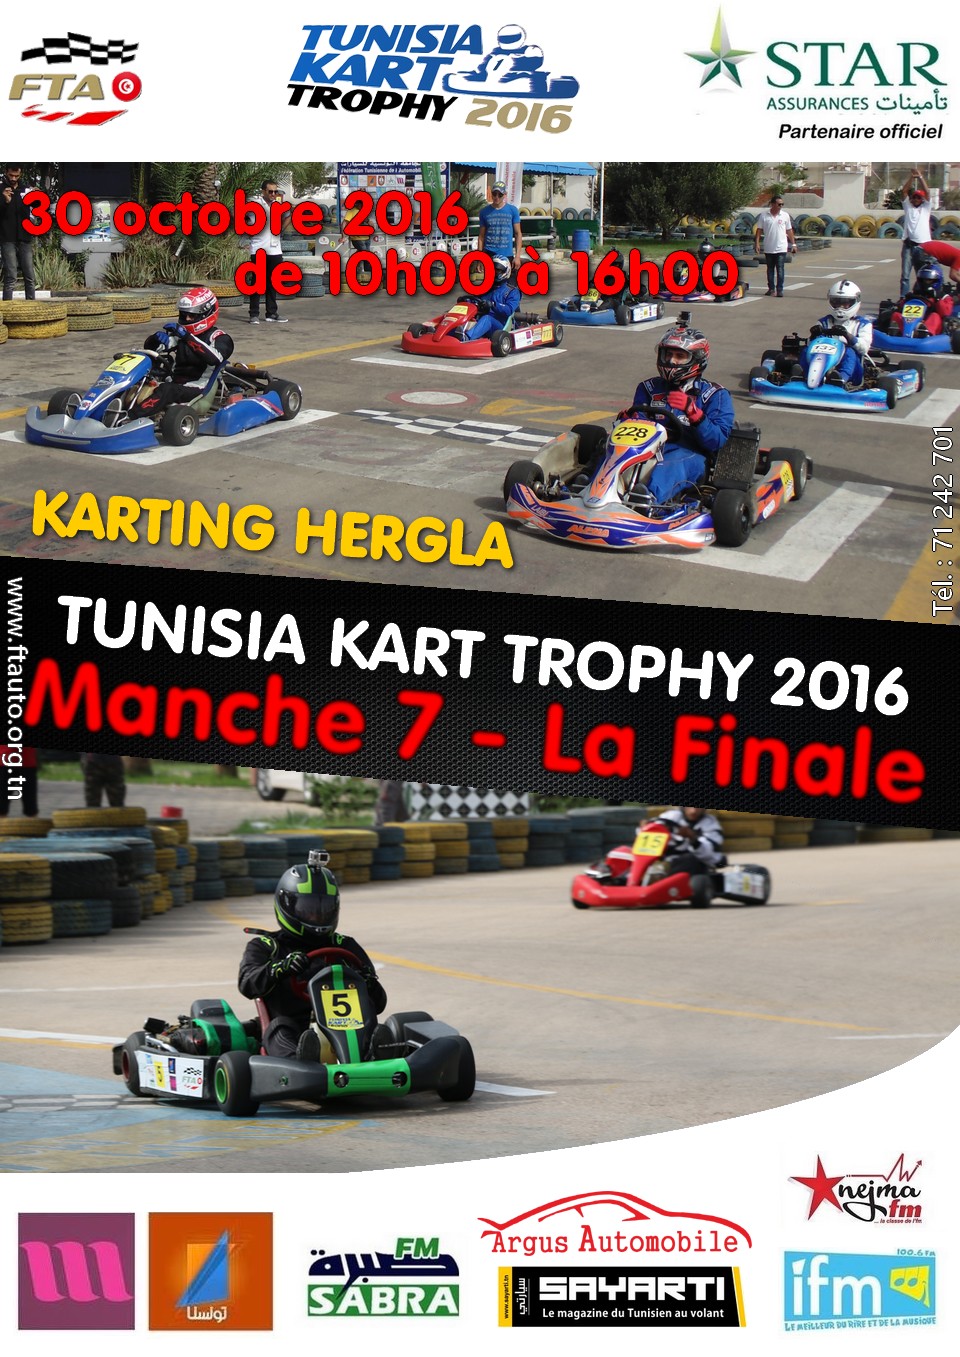 Manche 7 – Tunisia Kart Trophy 2016 – La Finale